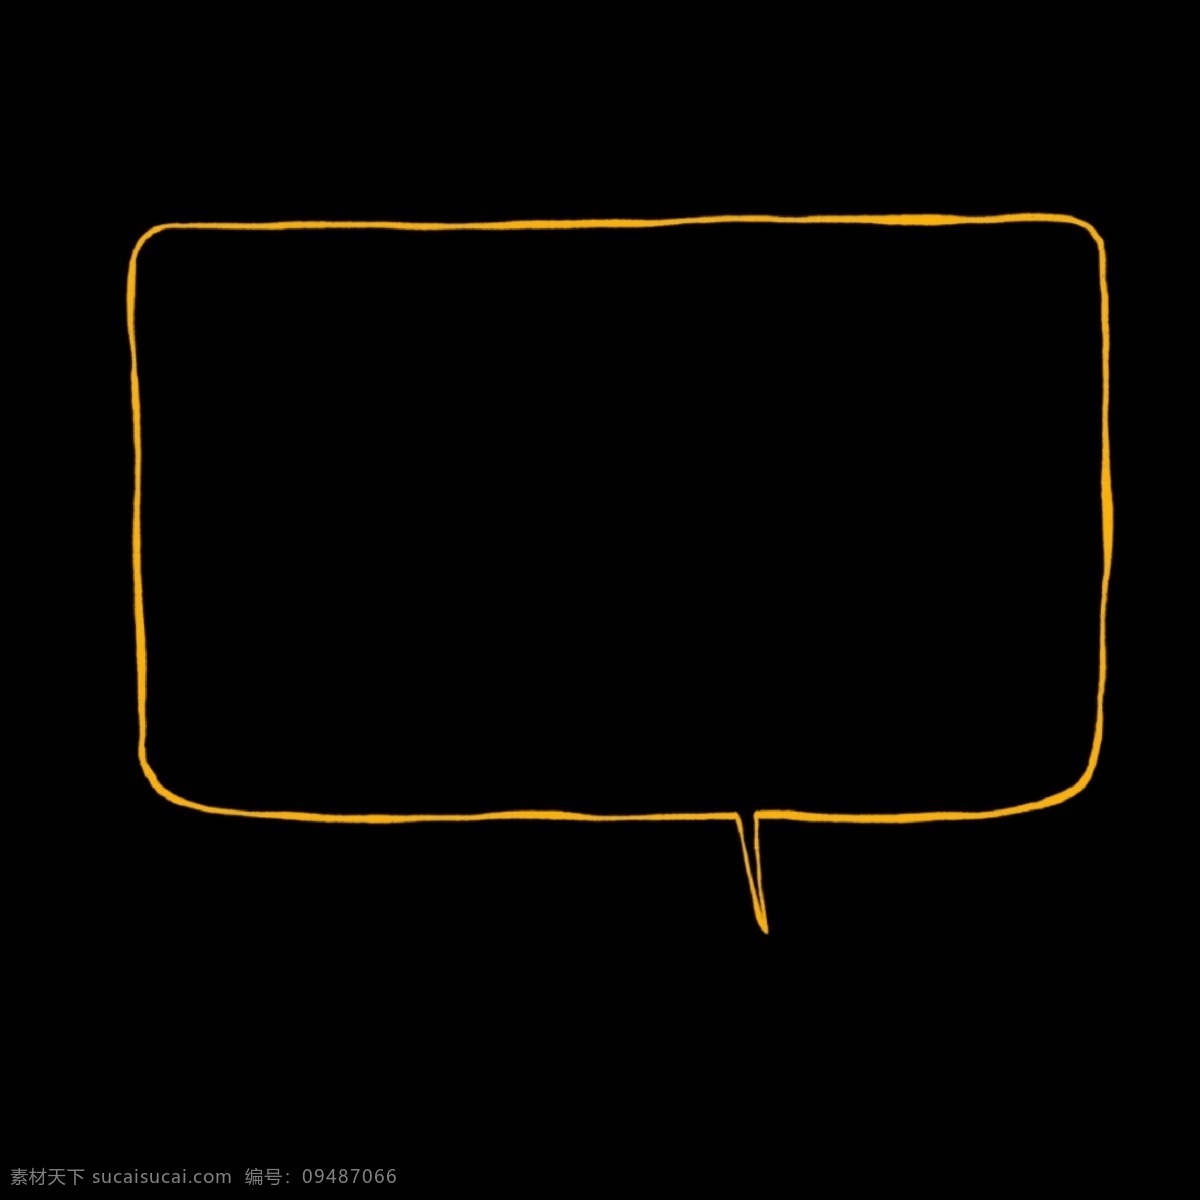 对话框 气泡 线条 简约 免 扣 免扣 黑色 橙色 漫画 对话 简单 方框 提醒 清新 圆框 圆角 可爱